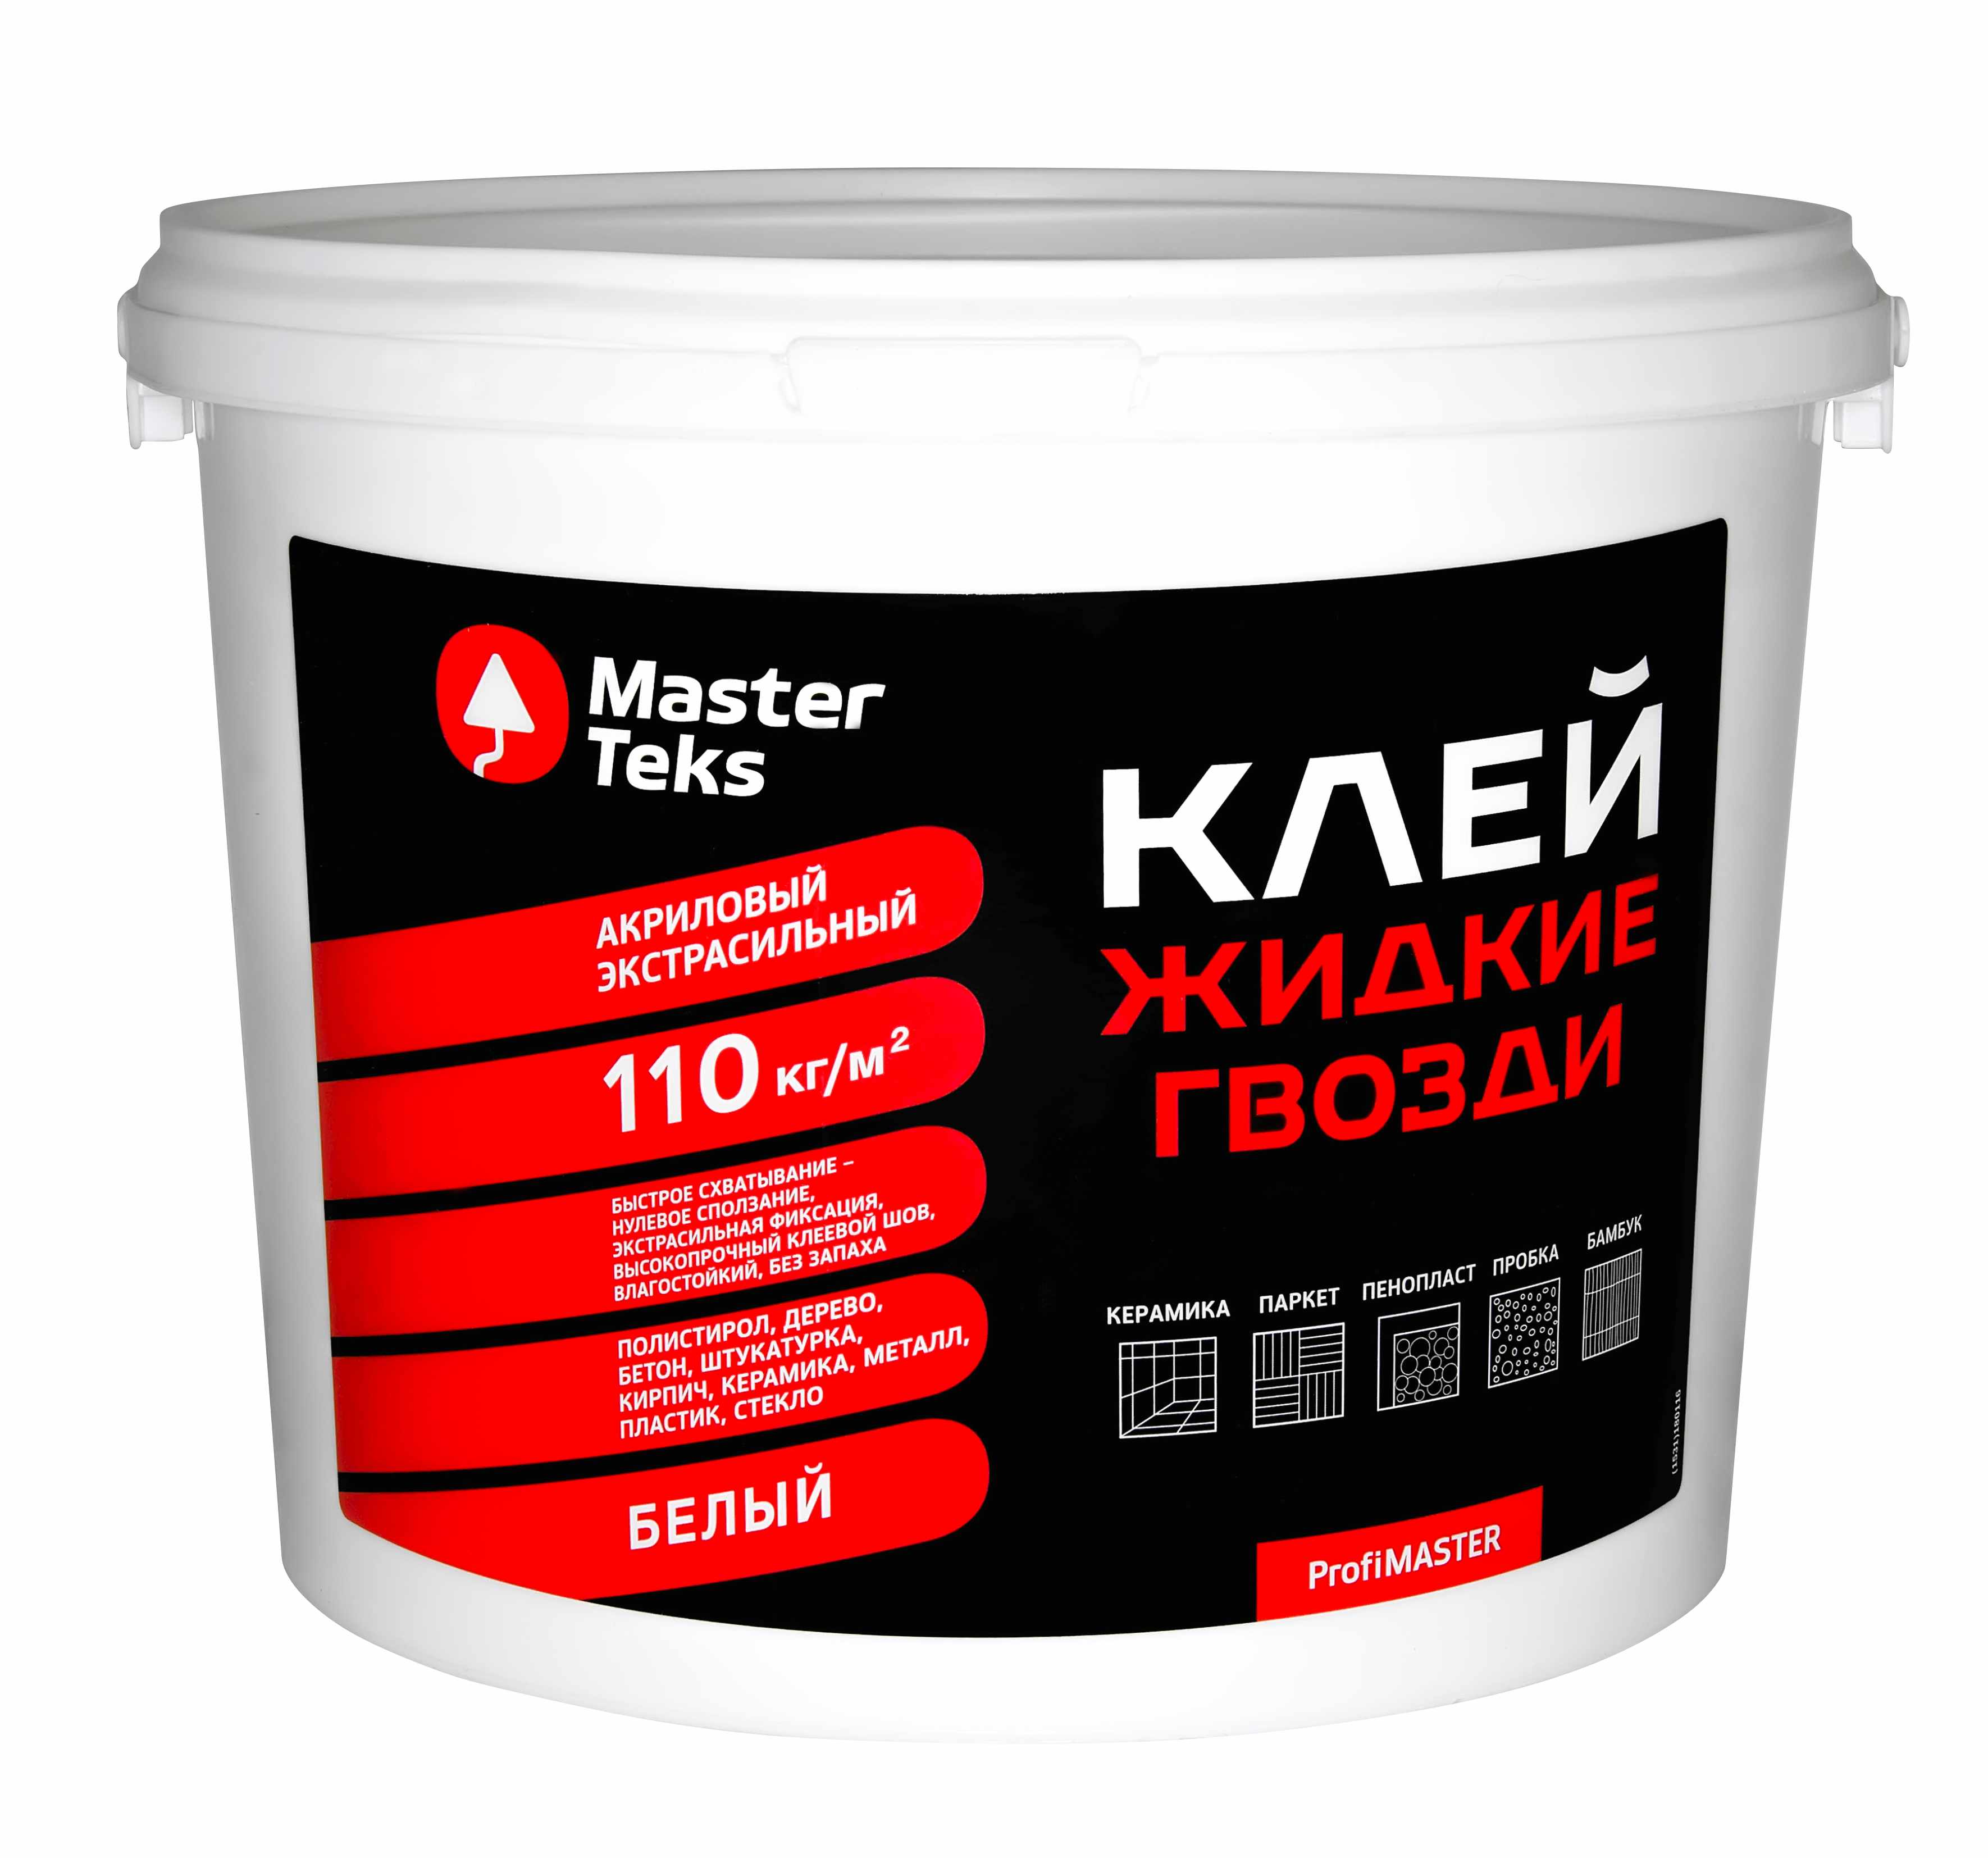 Клей MasterTeks PM жидкие гвозди, акриловый, экстрасильный, белый, 4,5 кг